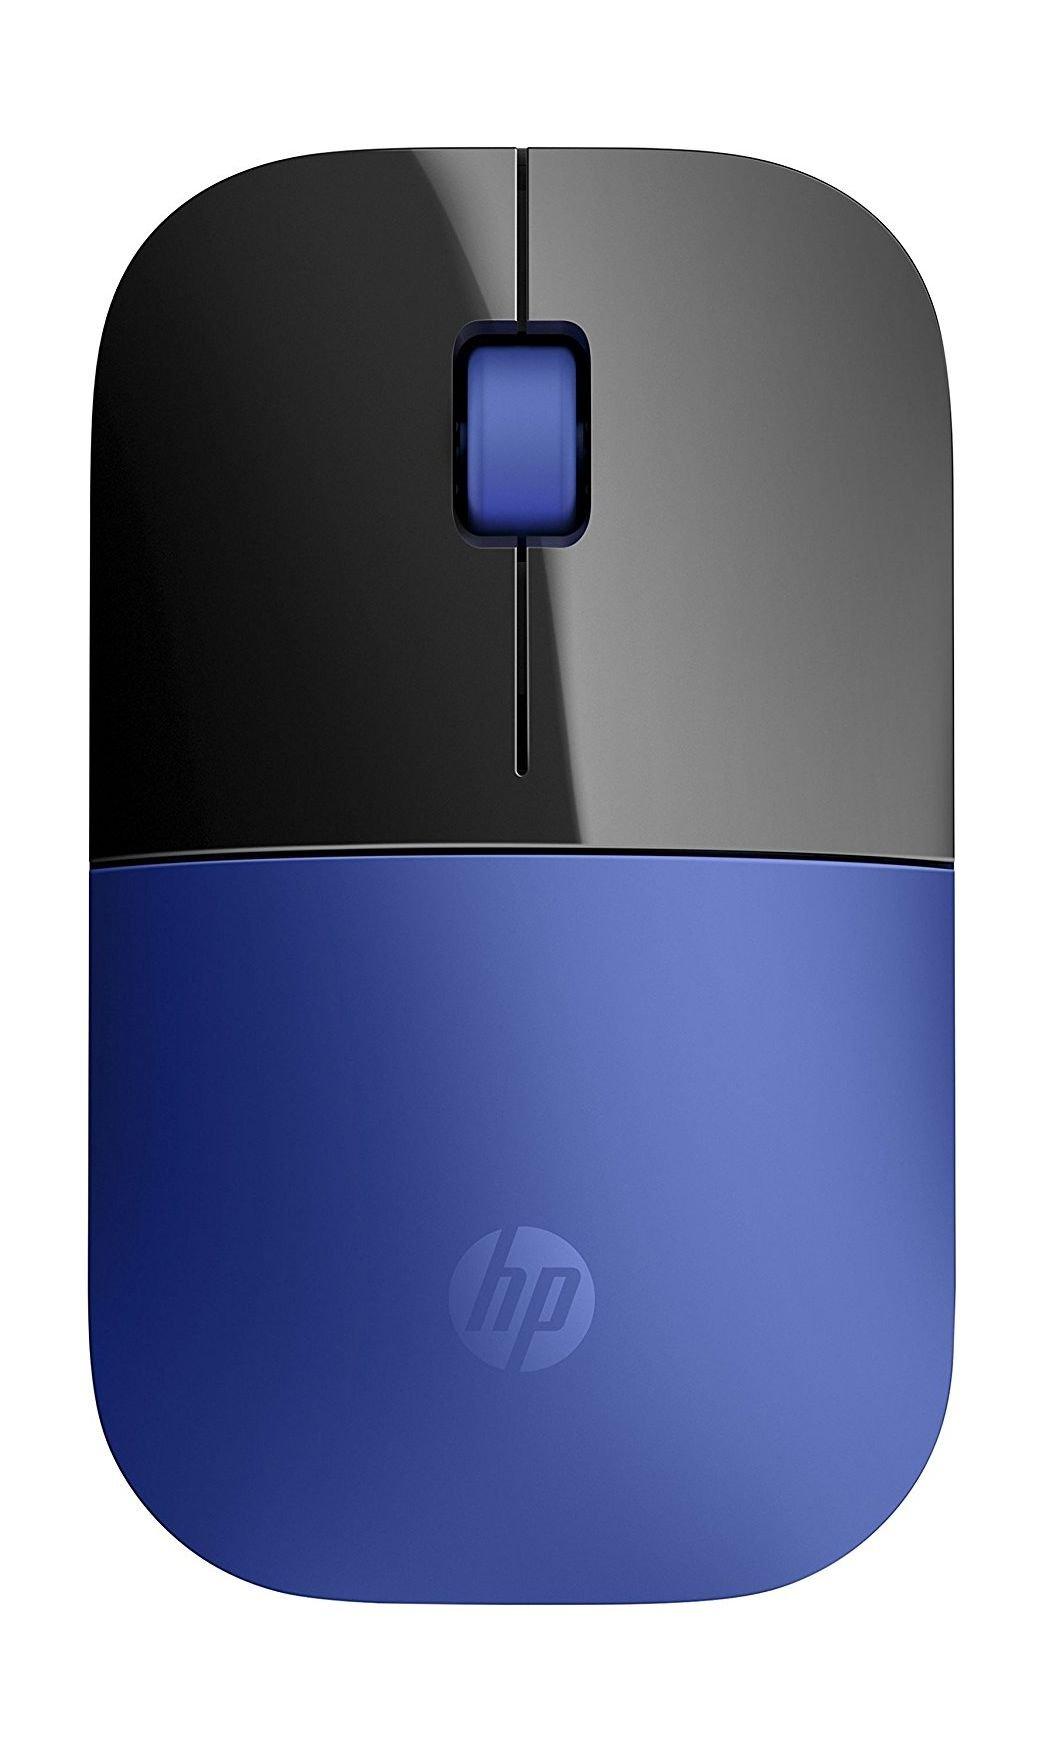 Buy Hp z3700 wireless mouse - blue in Kuwait